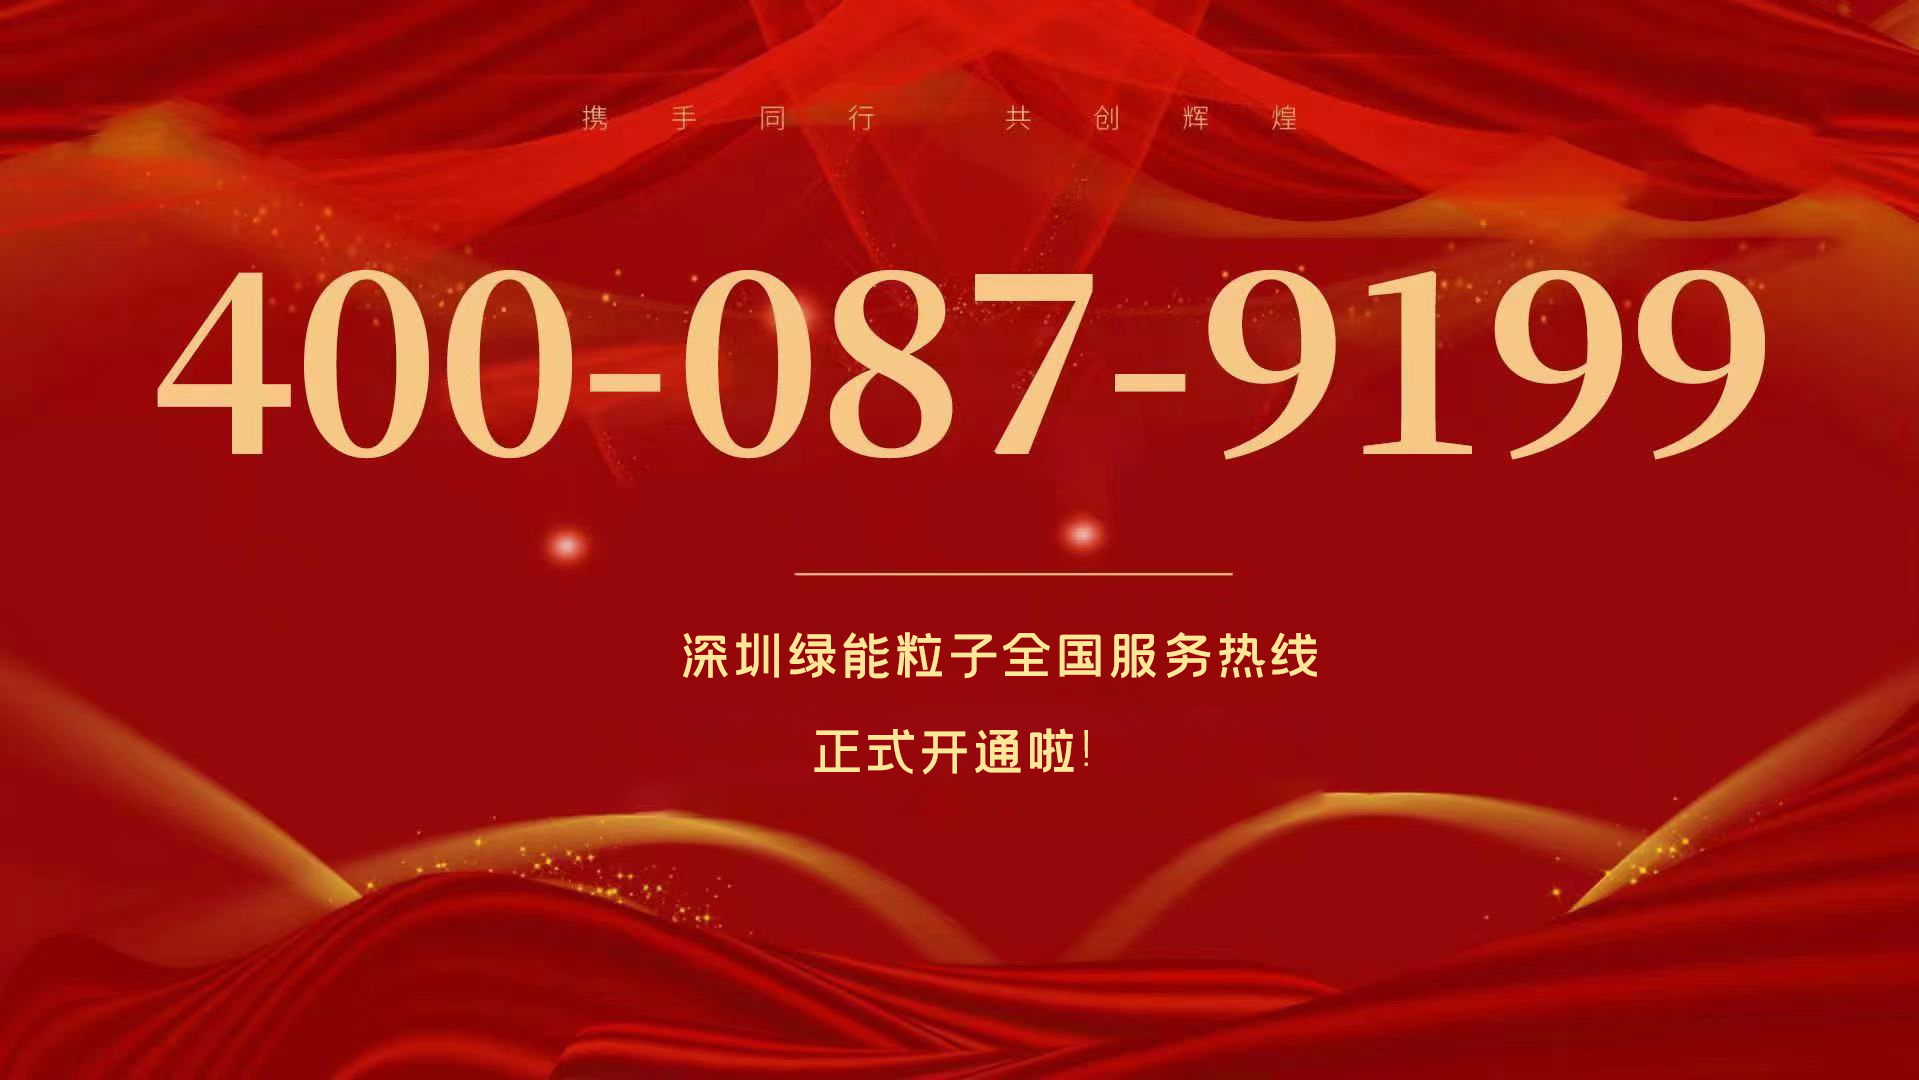 深圳尊龙凯时天下效劳热线400-087-9199正式开通啦！